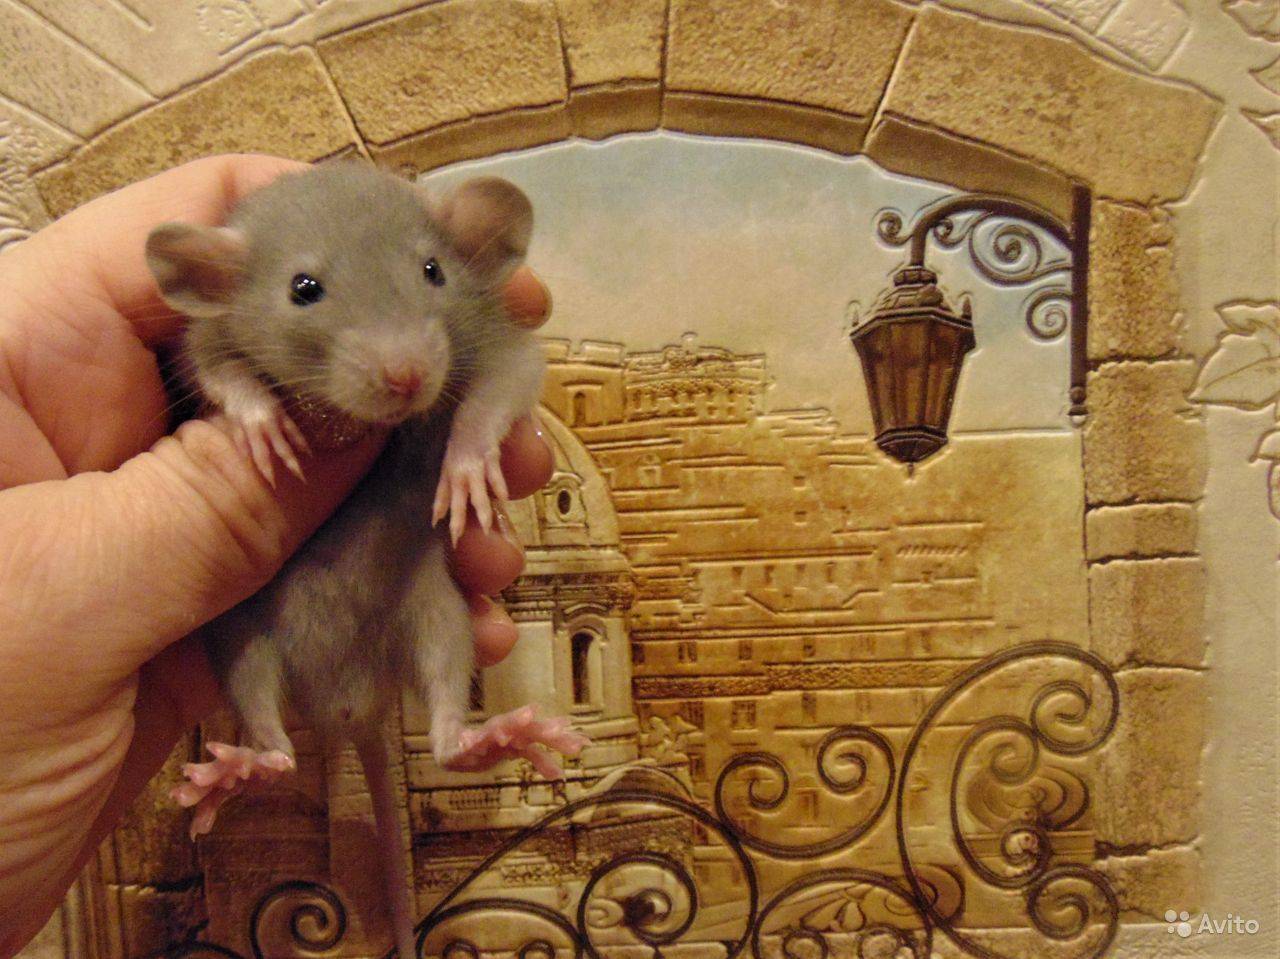 Крысы хаски - подробное описание и важные советы по уходу